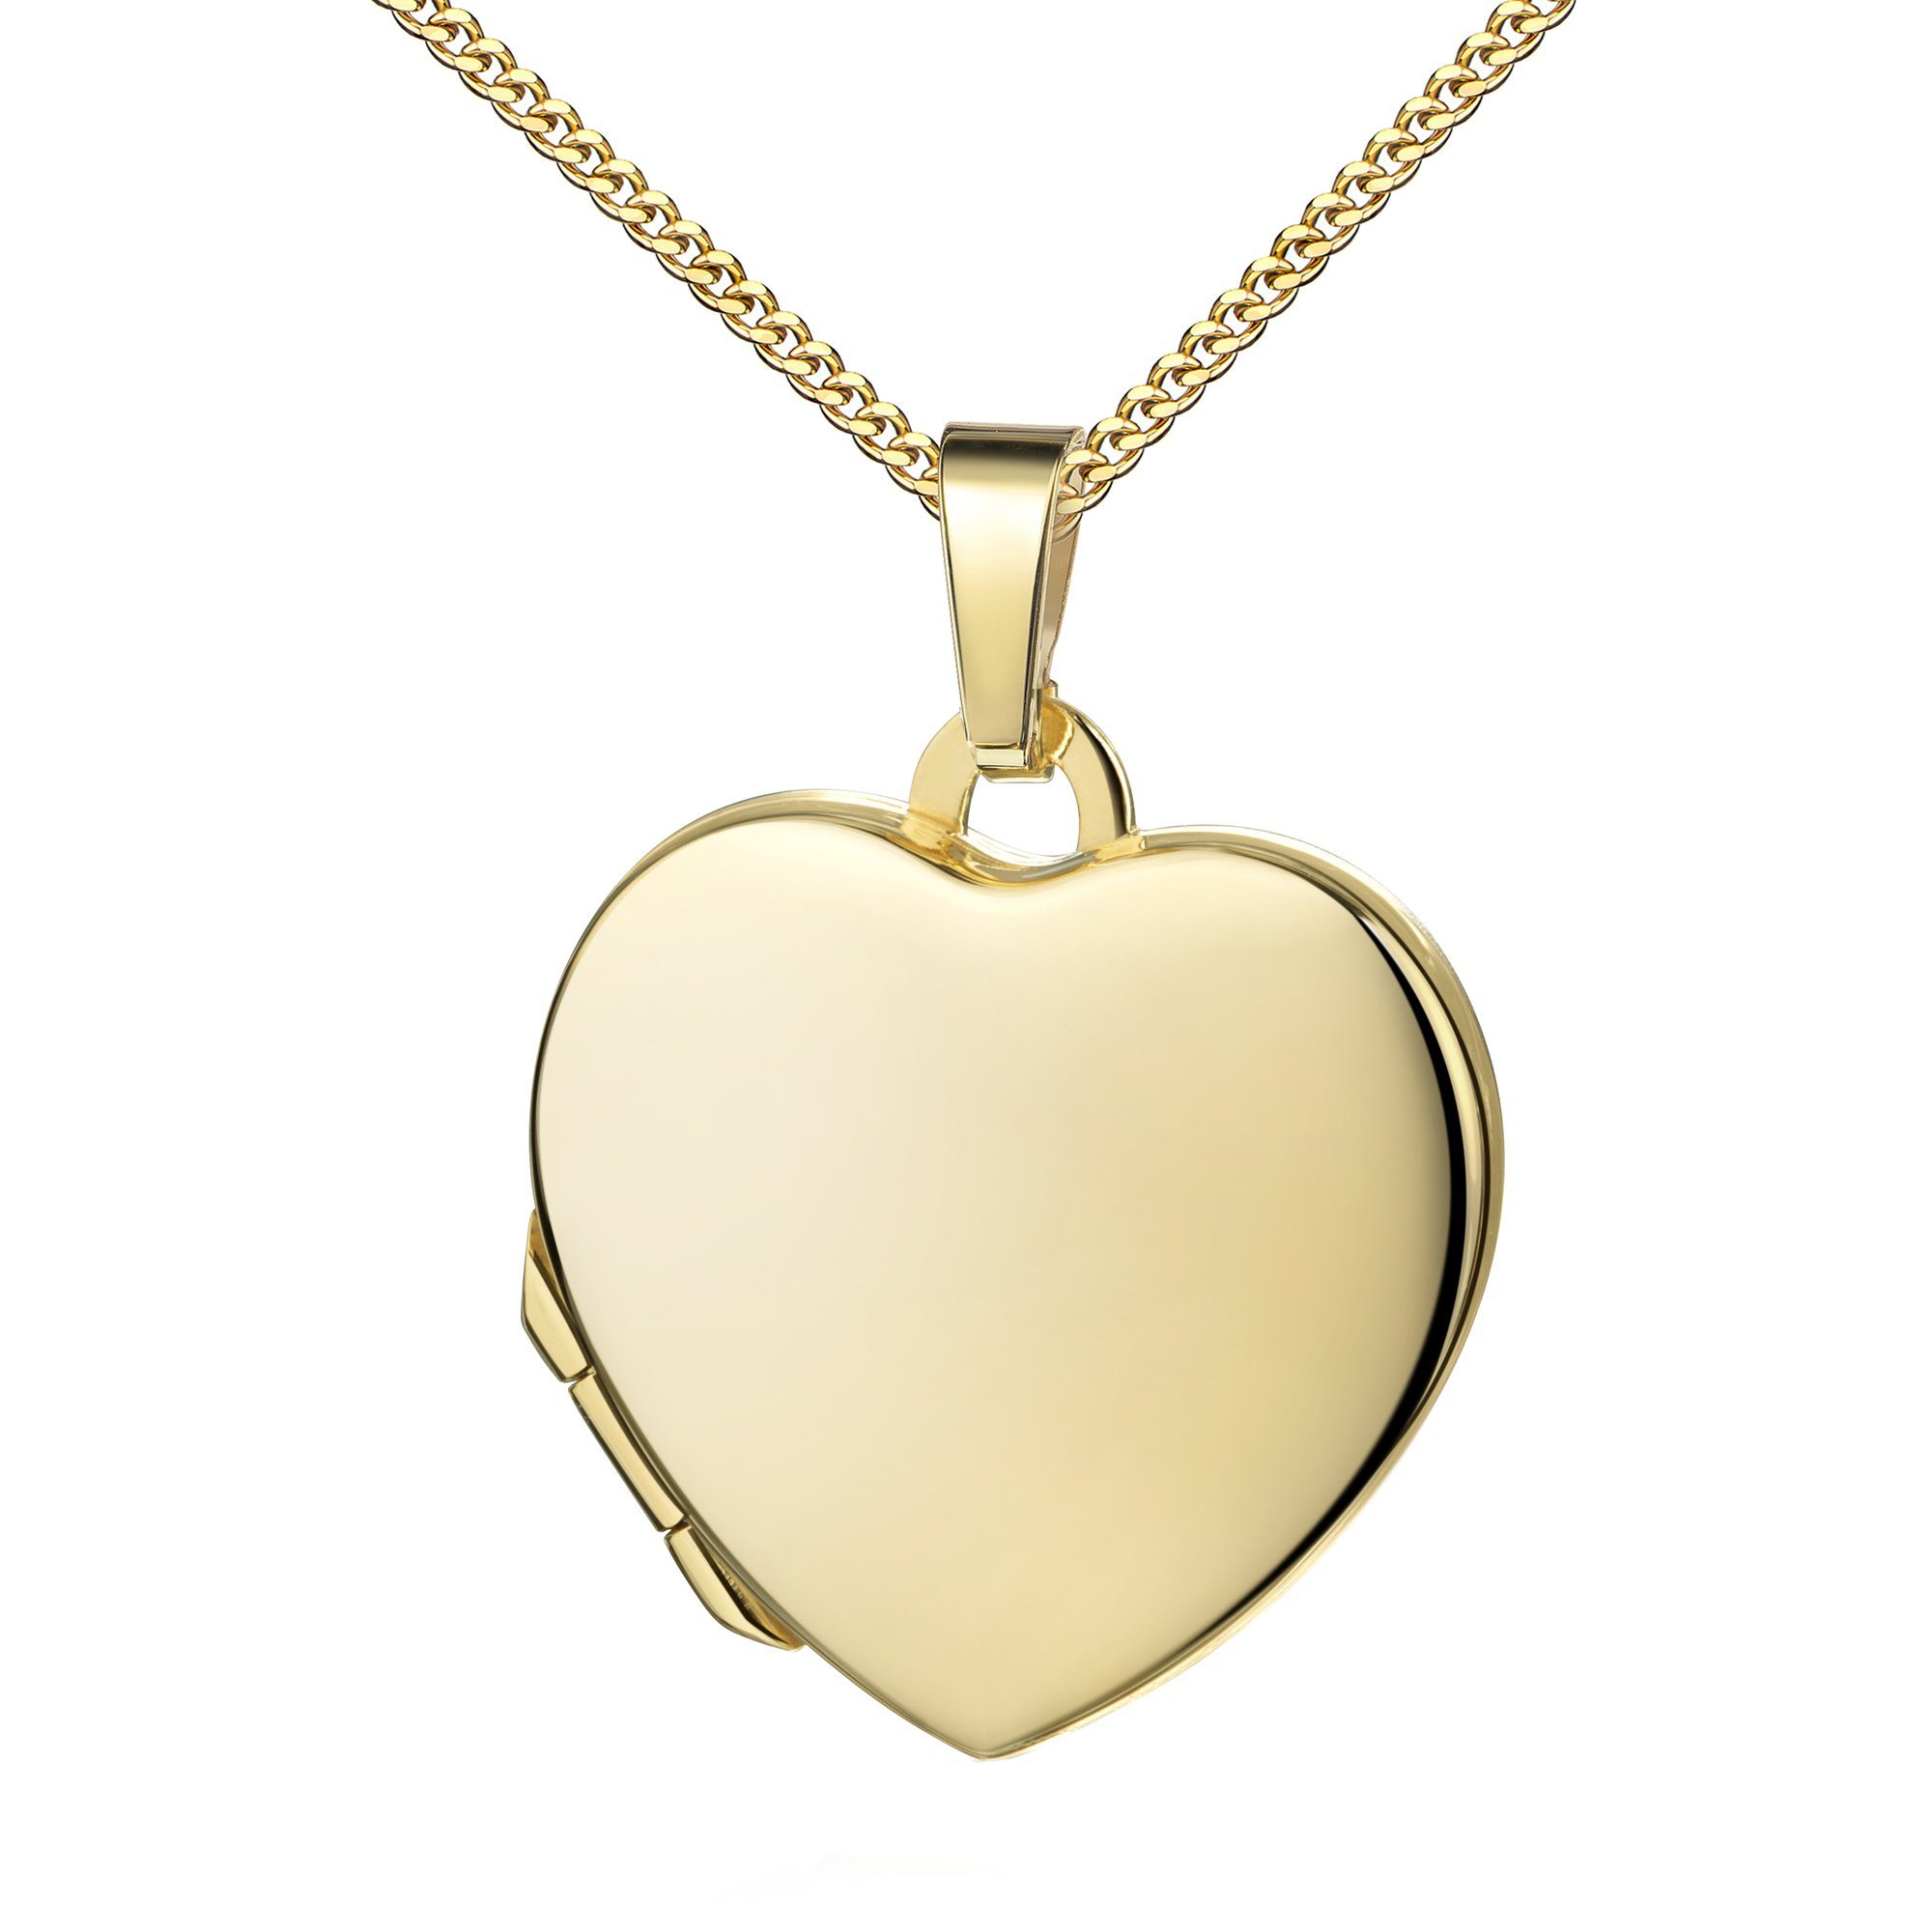 JEVELION Medallionanhänger Medaillon Gold 750 Amulett Anhänger Herz zum Öffnen für 2 Fotos (Fotomedaillon, für Damen und Mädchen), Mit Kette vergoldet - Länge wählbar 36 - 70 cm oder ohne Kette.